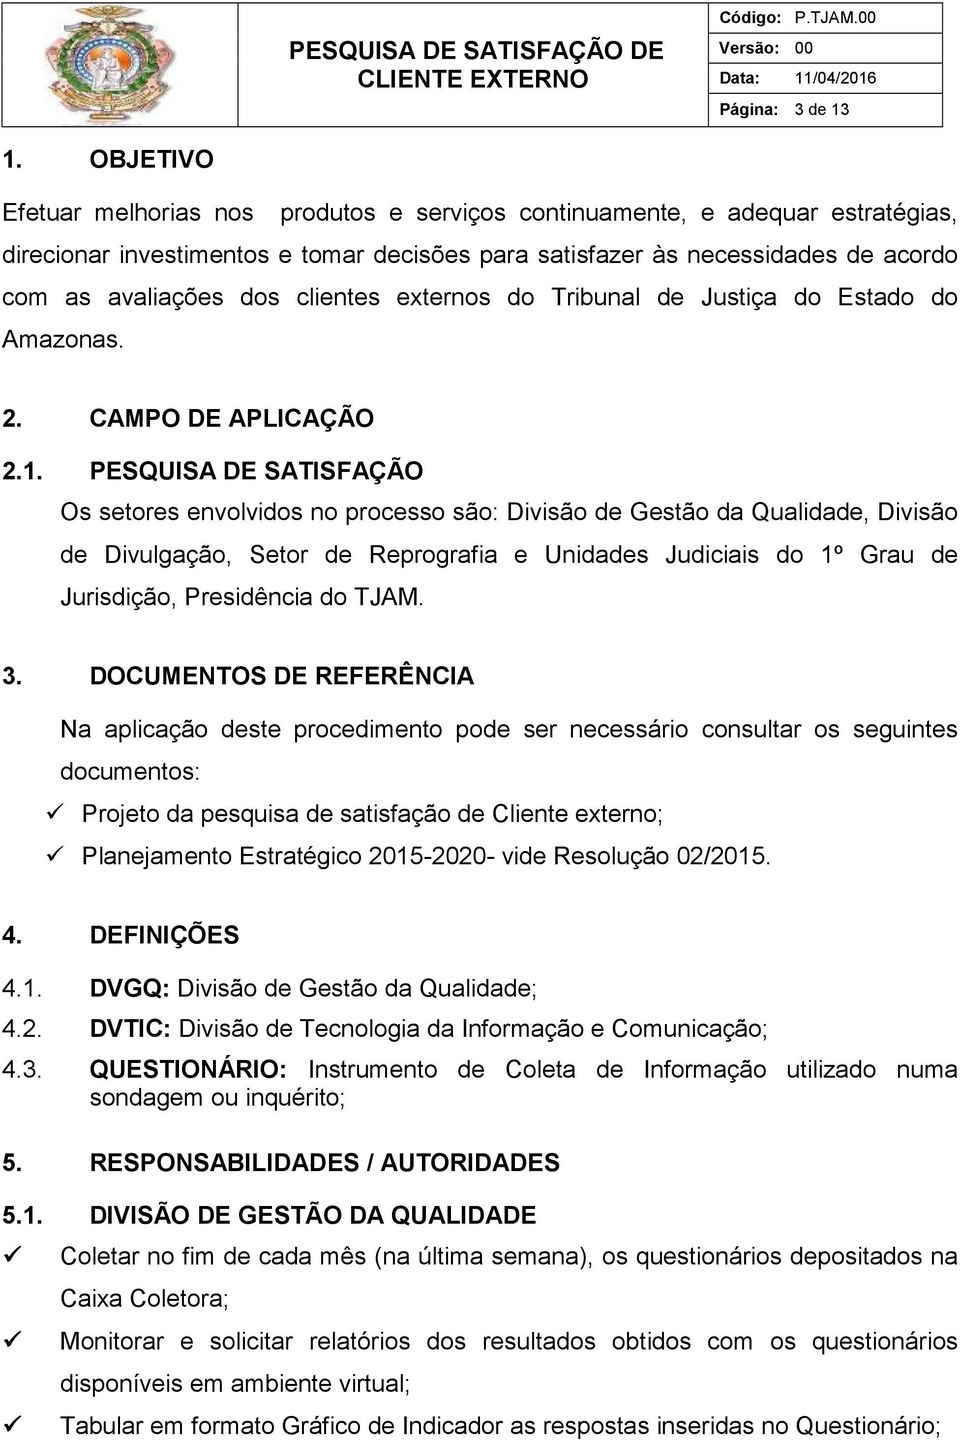 clientes externos do Tribunal de Justiça do Estado do Amazonas. 2. CAMPO DE APLICAÇÃO 2.1.